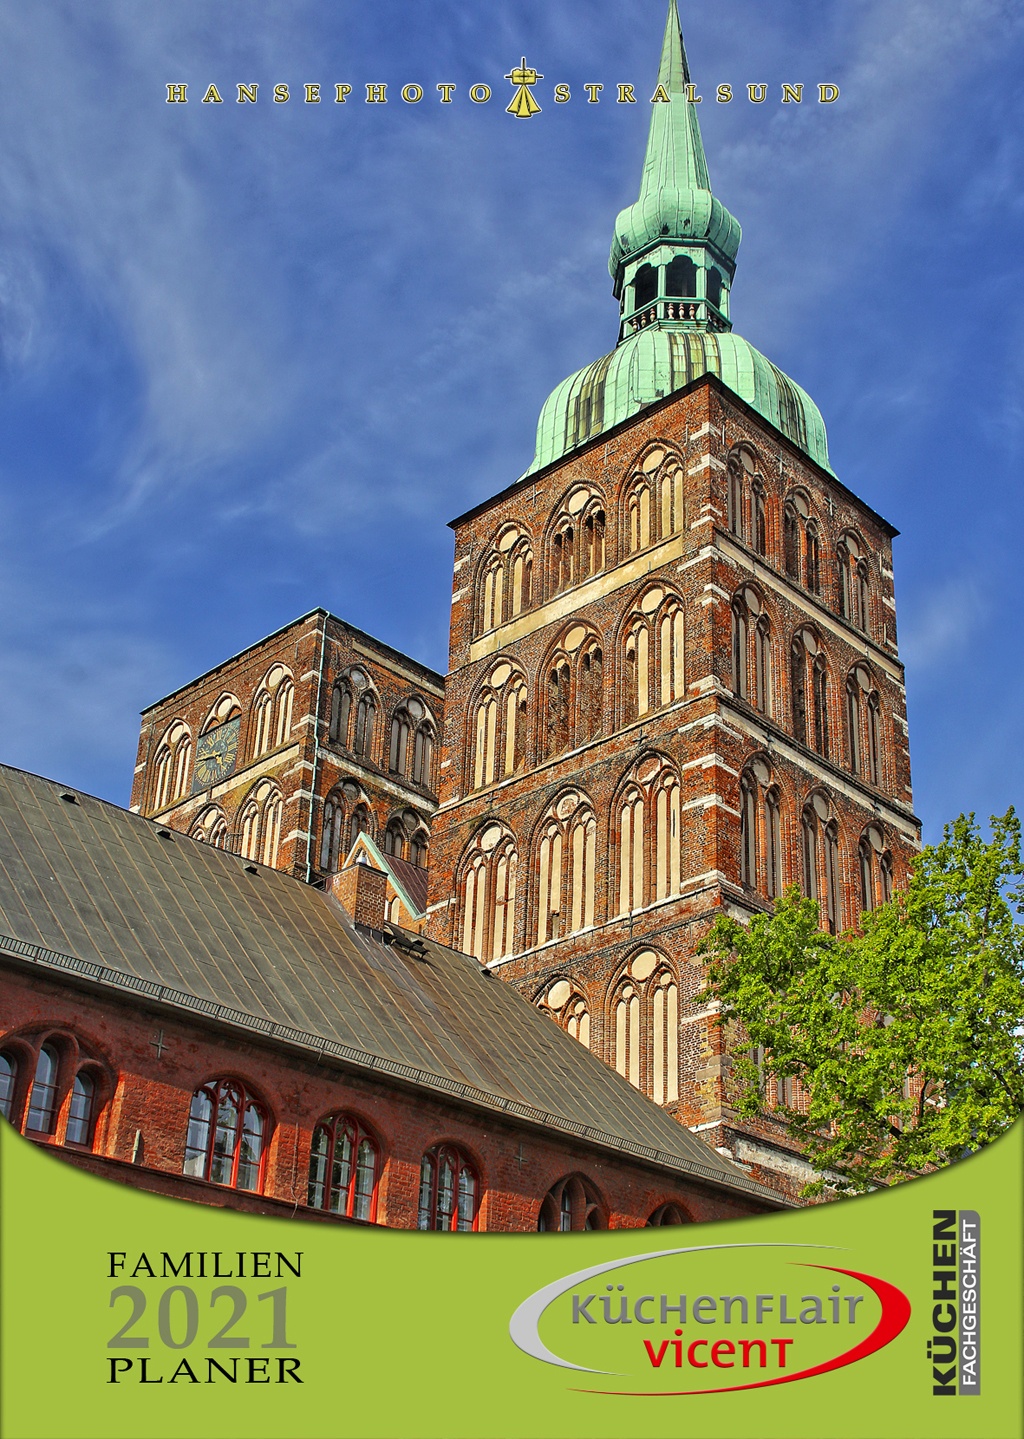 Die beiden Türme der Nikolaikirche von der Rückseite des Rathauses gesehen